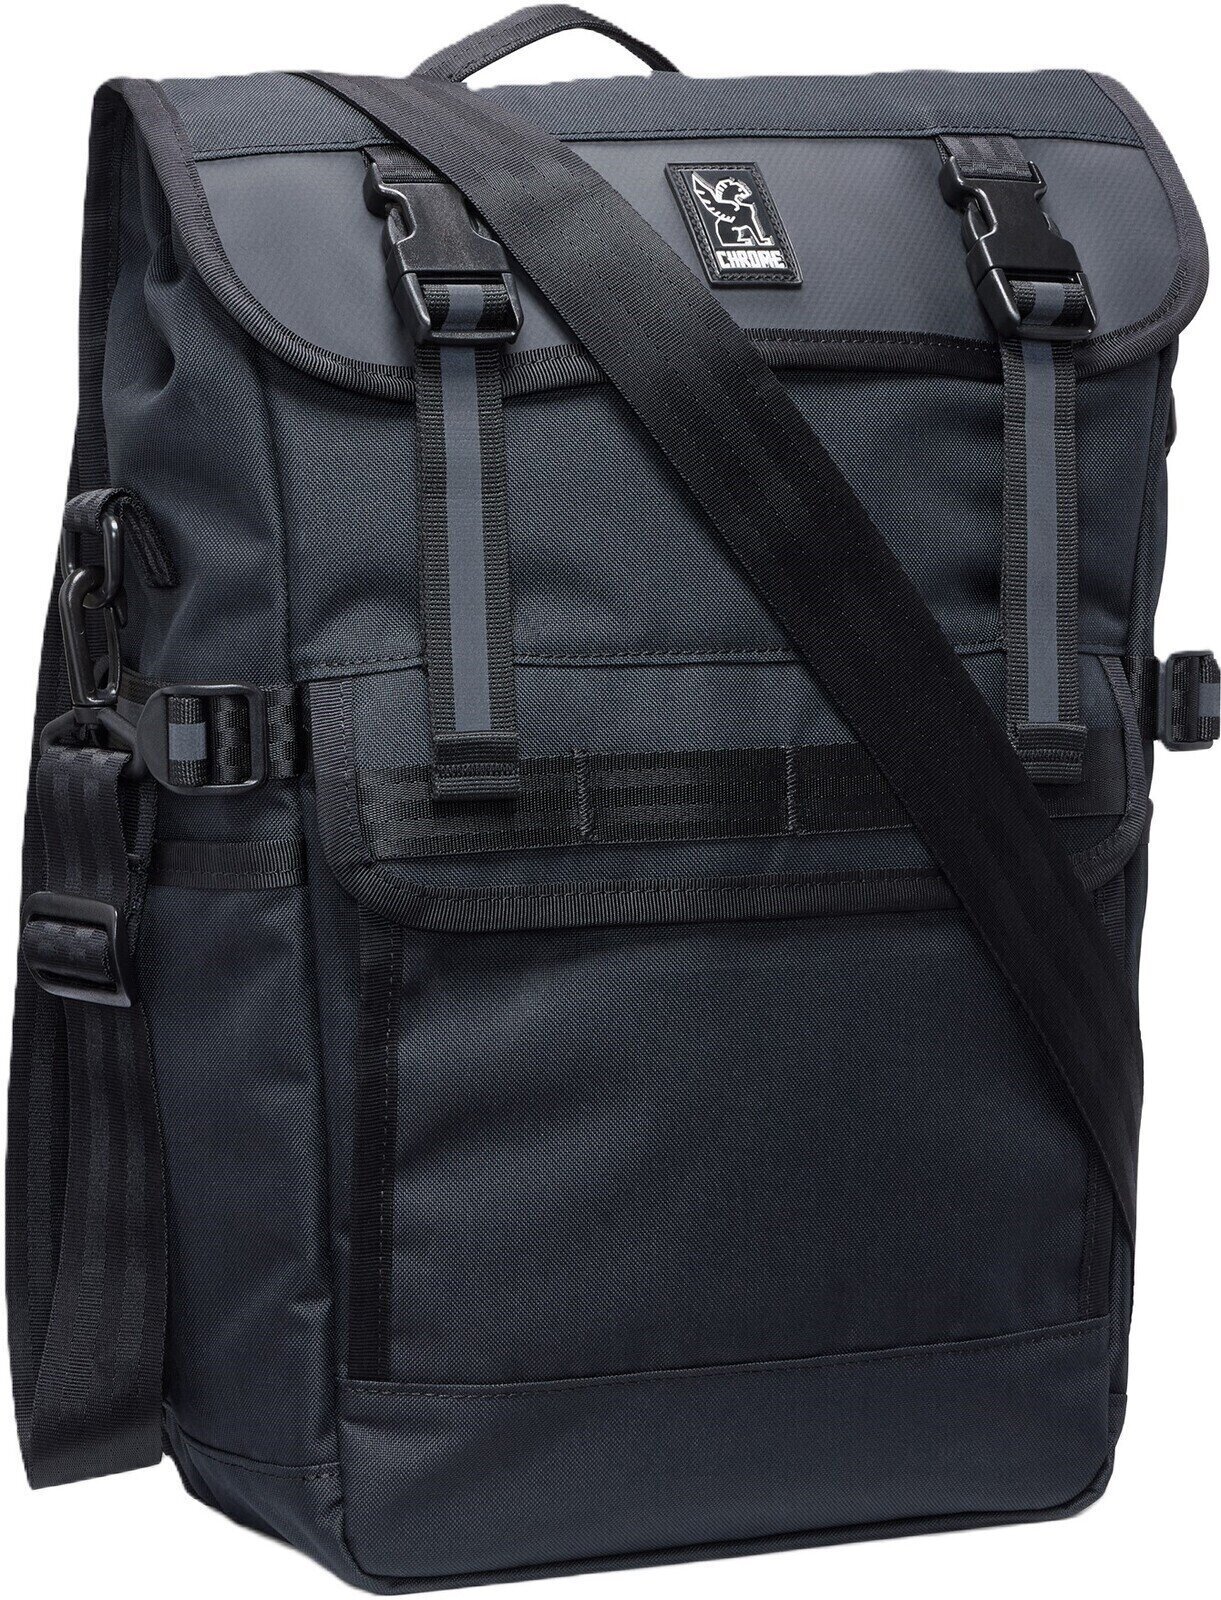 Fietstas Chrome Holman Pannier Bag Black 15 - 20 L